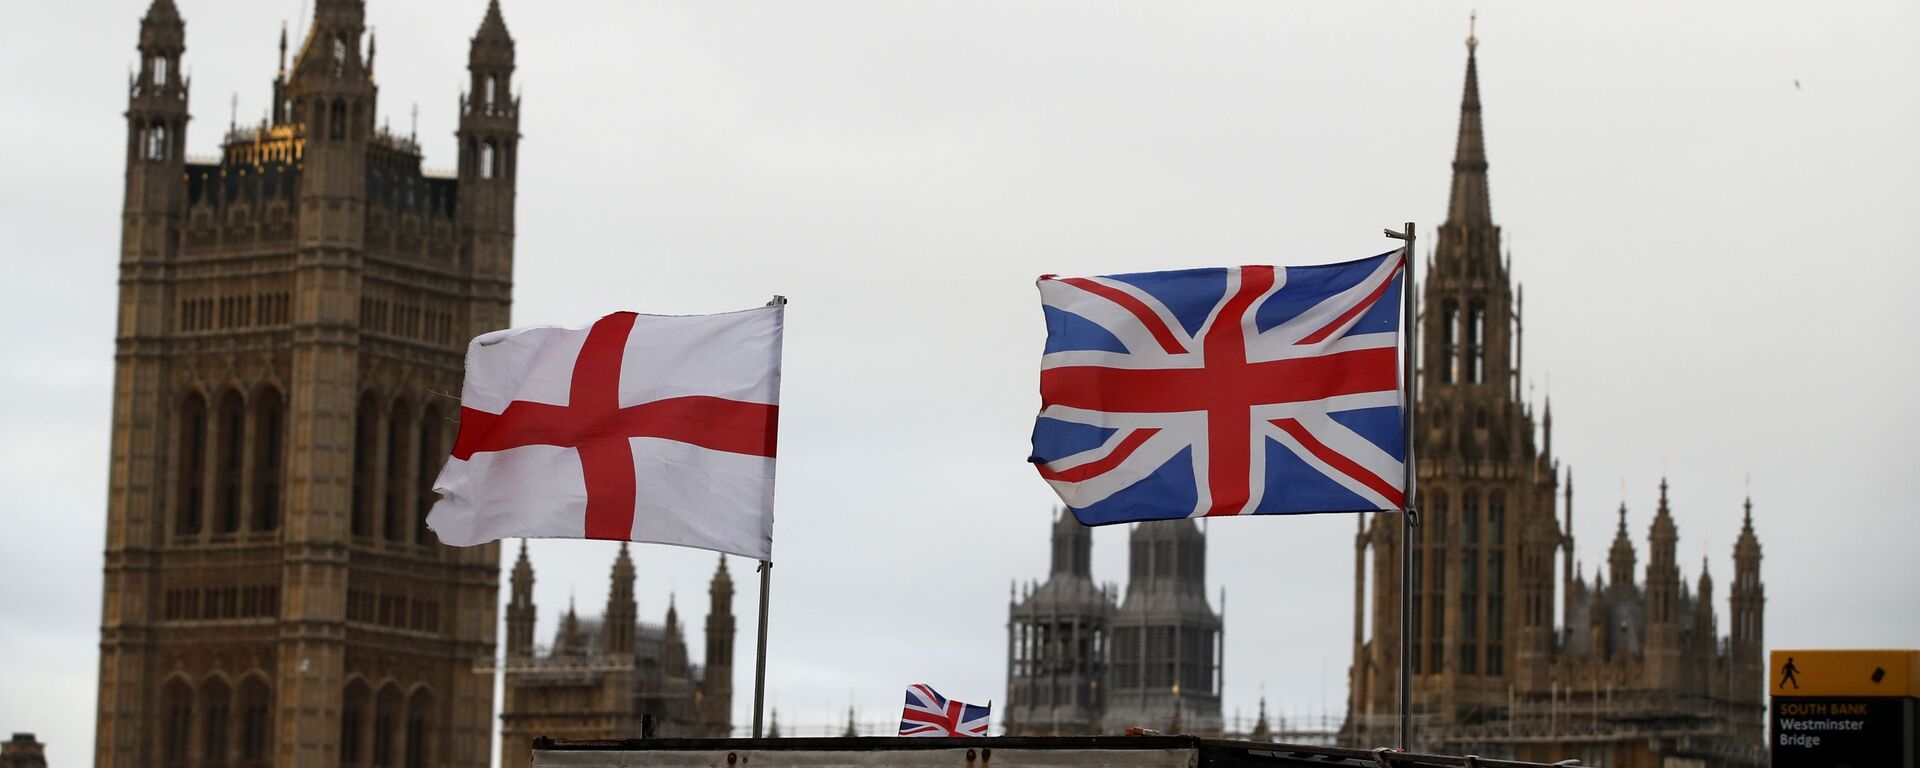 Britanska i engleska zastava ispred zgrade britanskog parlamenta u Londonu - Sputnik Srbija, 1920, 28.01.2021